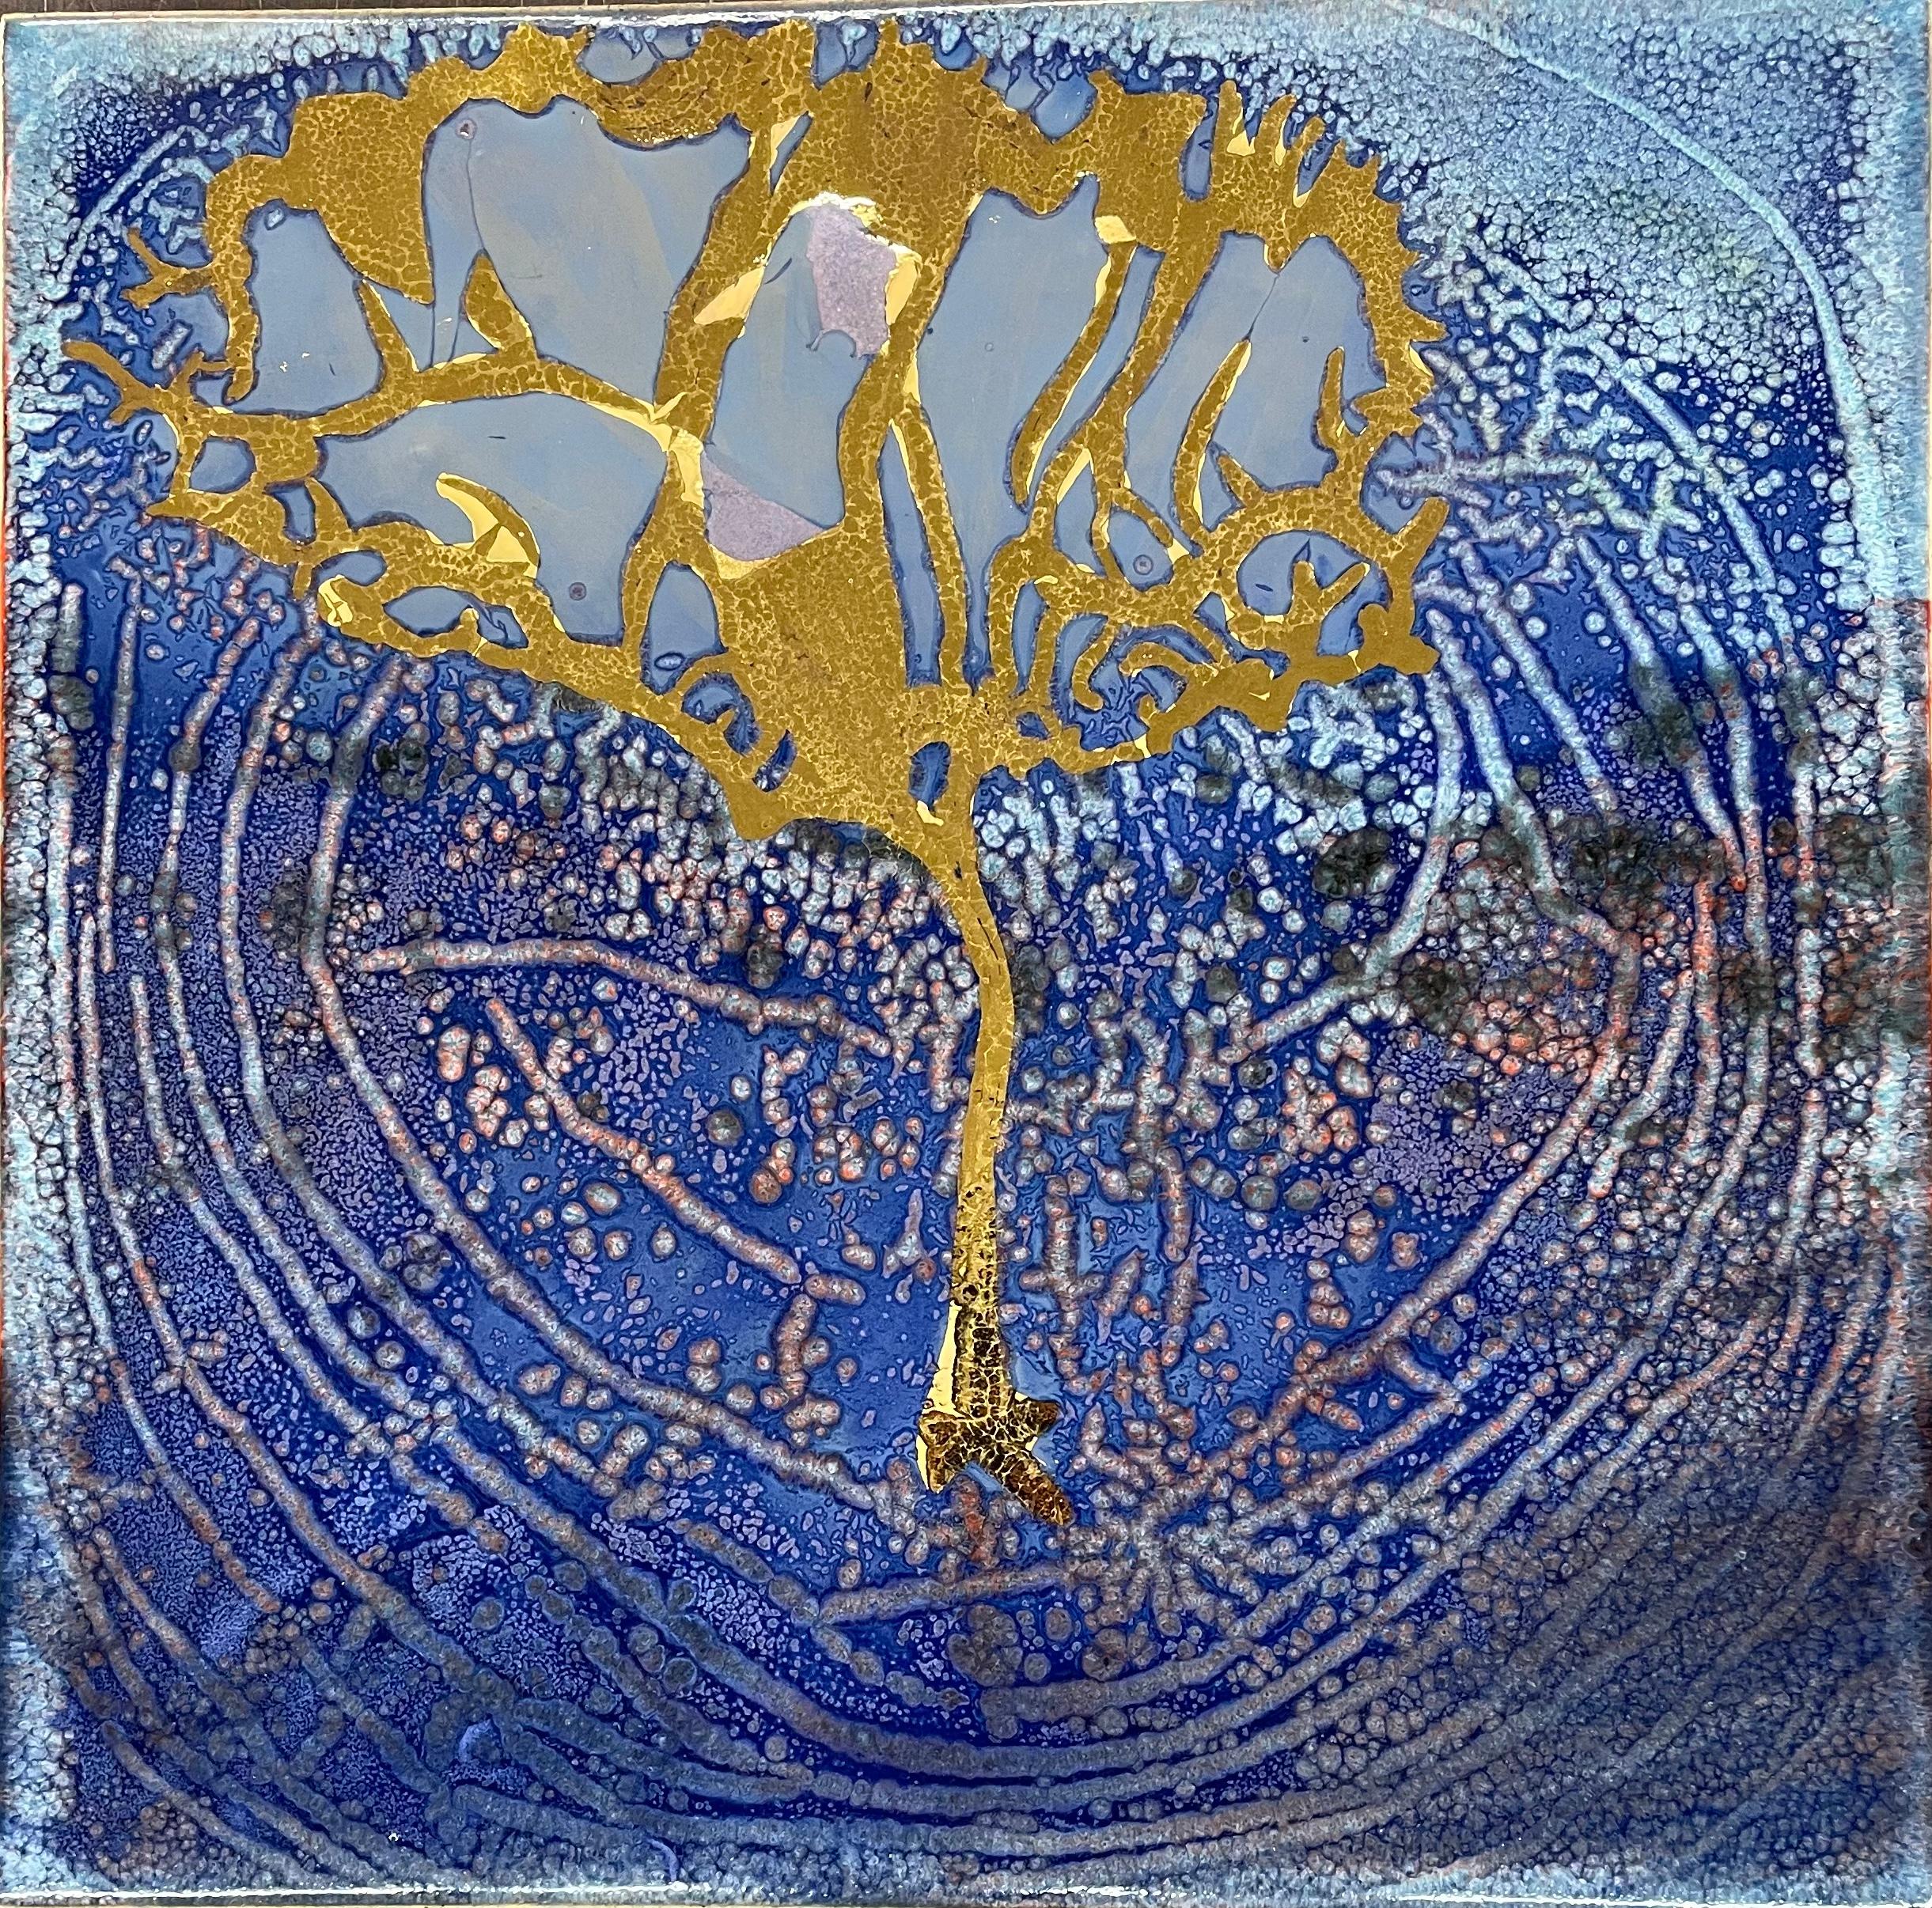 Tree of life - Mixed Media Art by Frank Olt